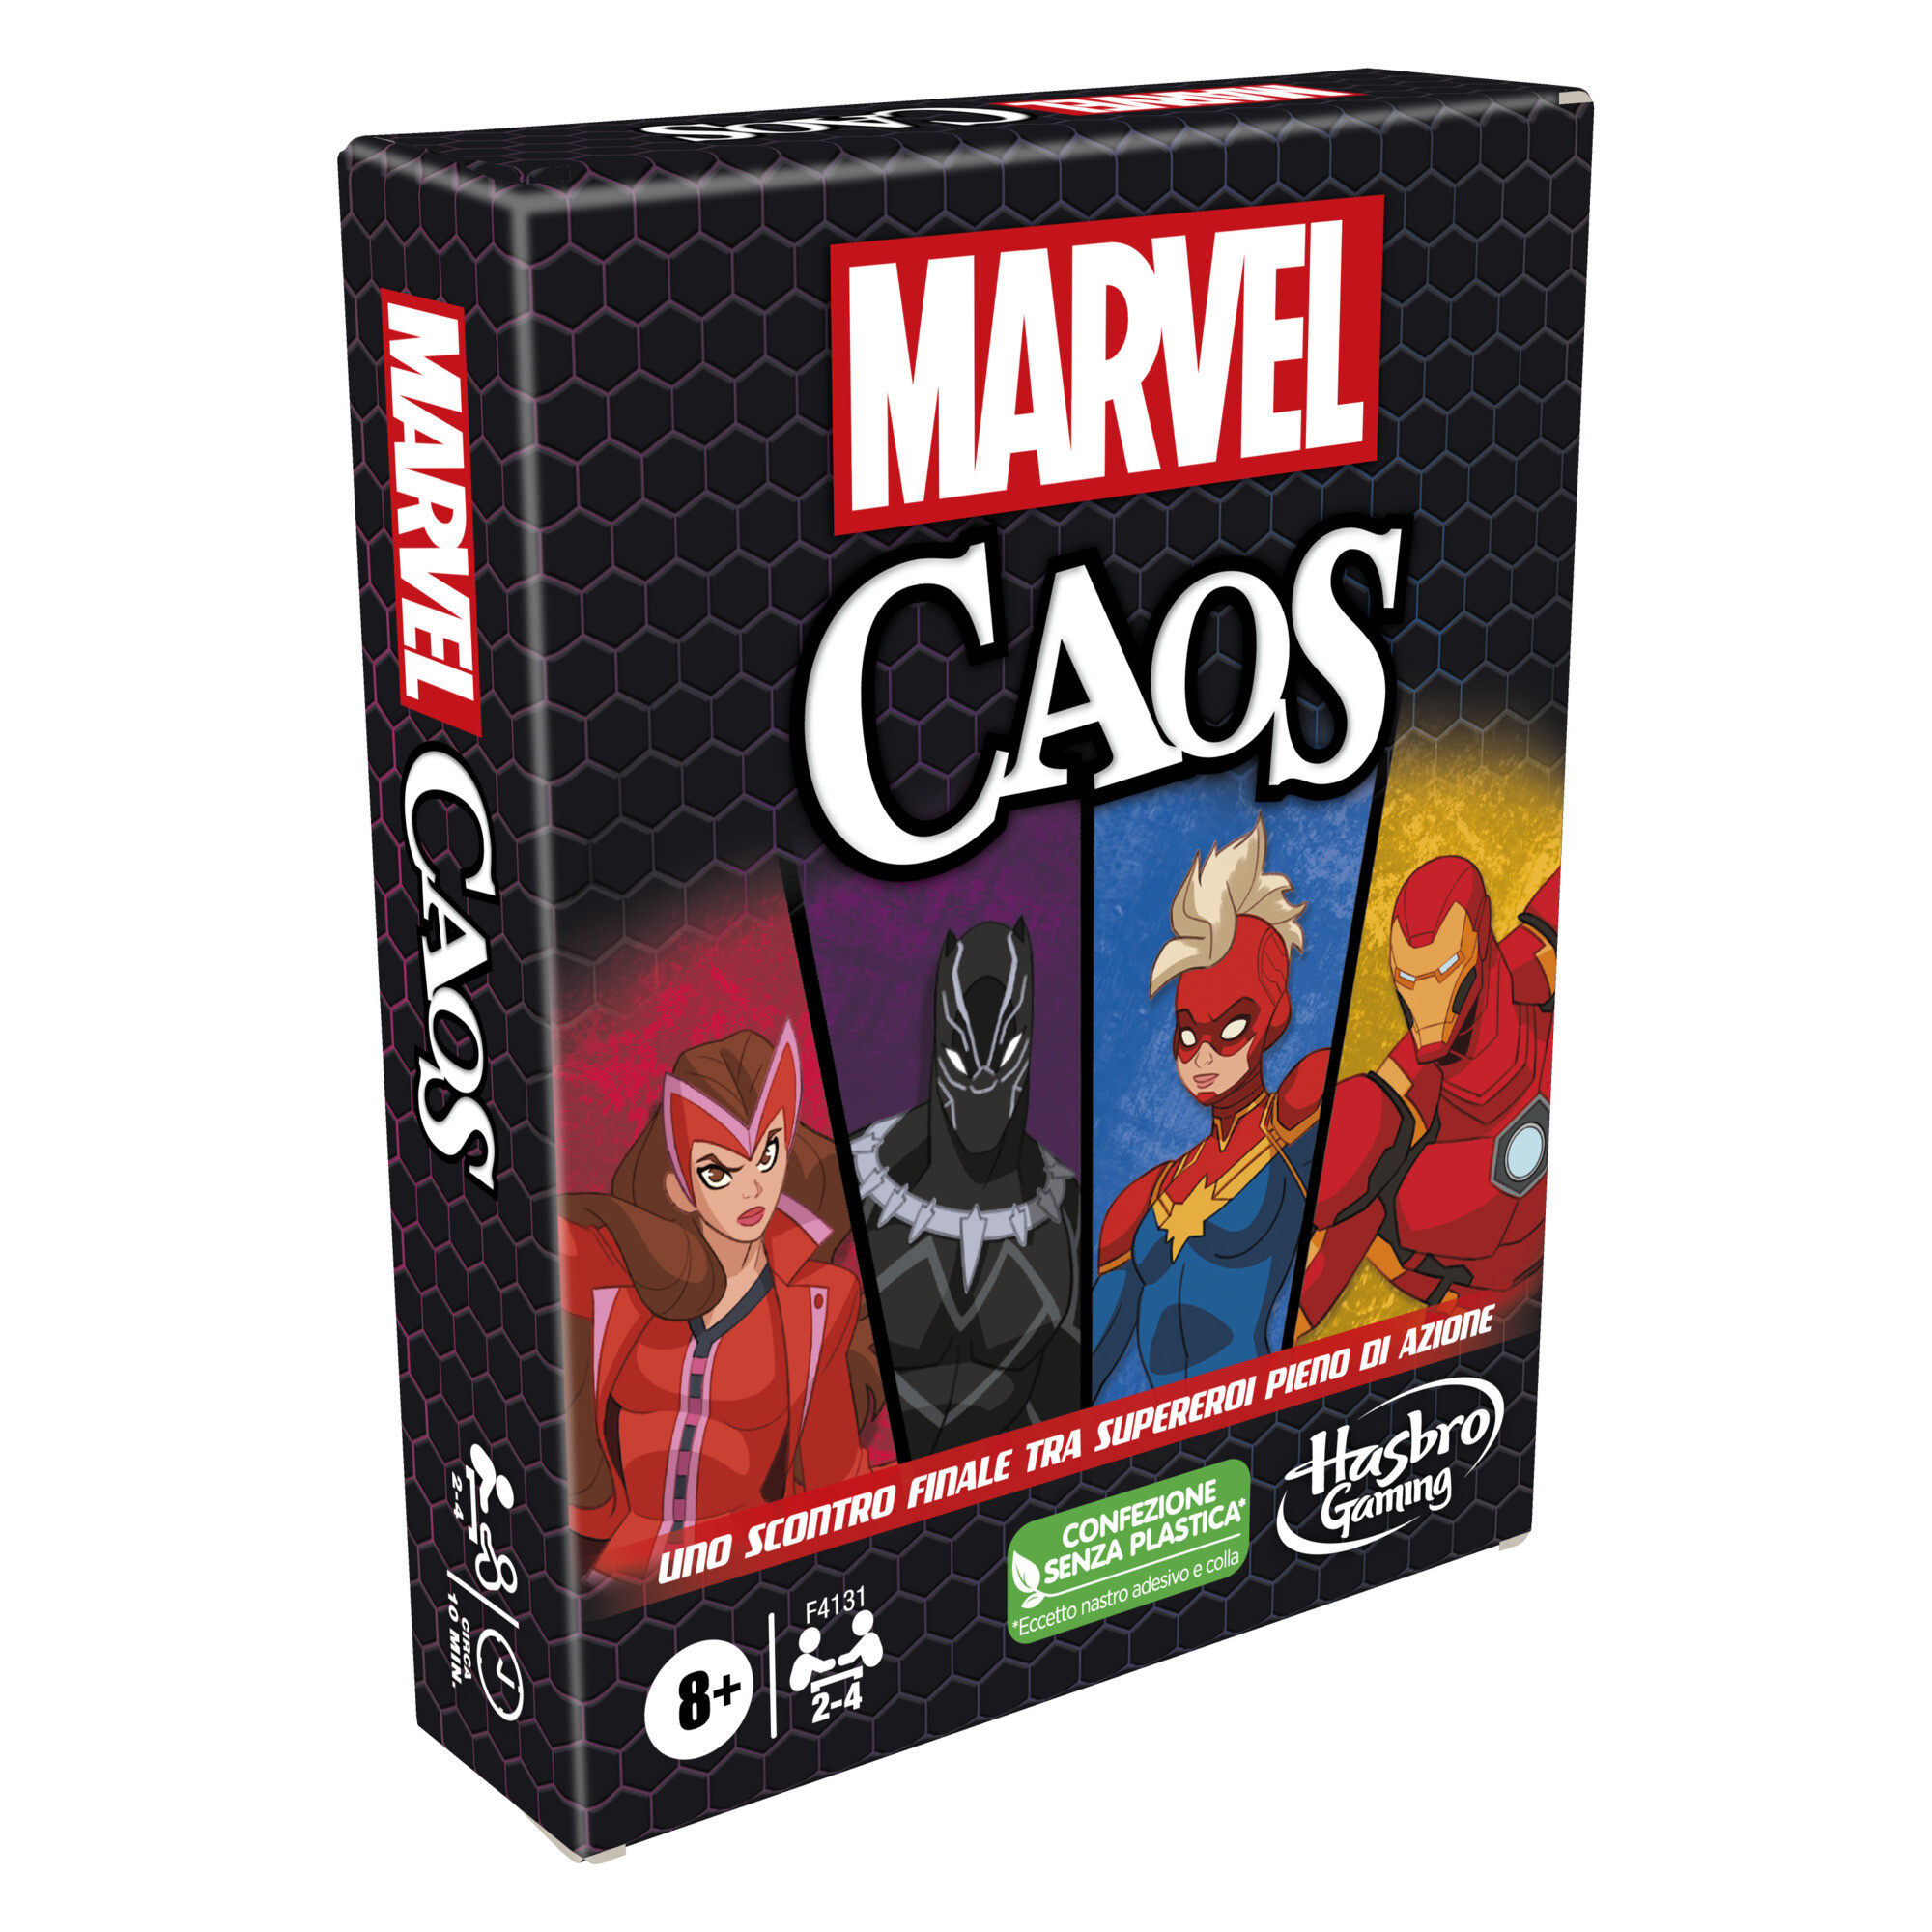 Marvel caos - gioco di carte hasbro gaming con i supereroi marvel, divertente gioco per famiglie dagli 8 anni in su, gioco rapido e semplice da imparare - 